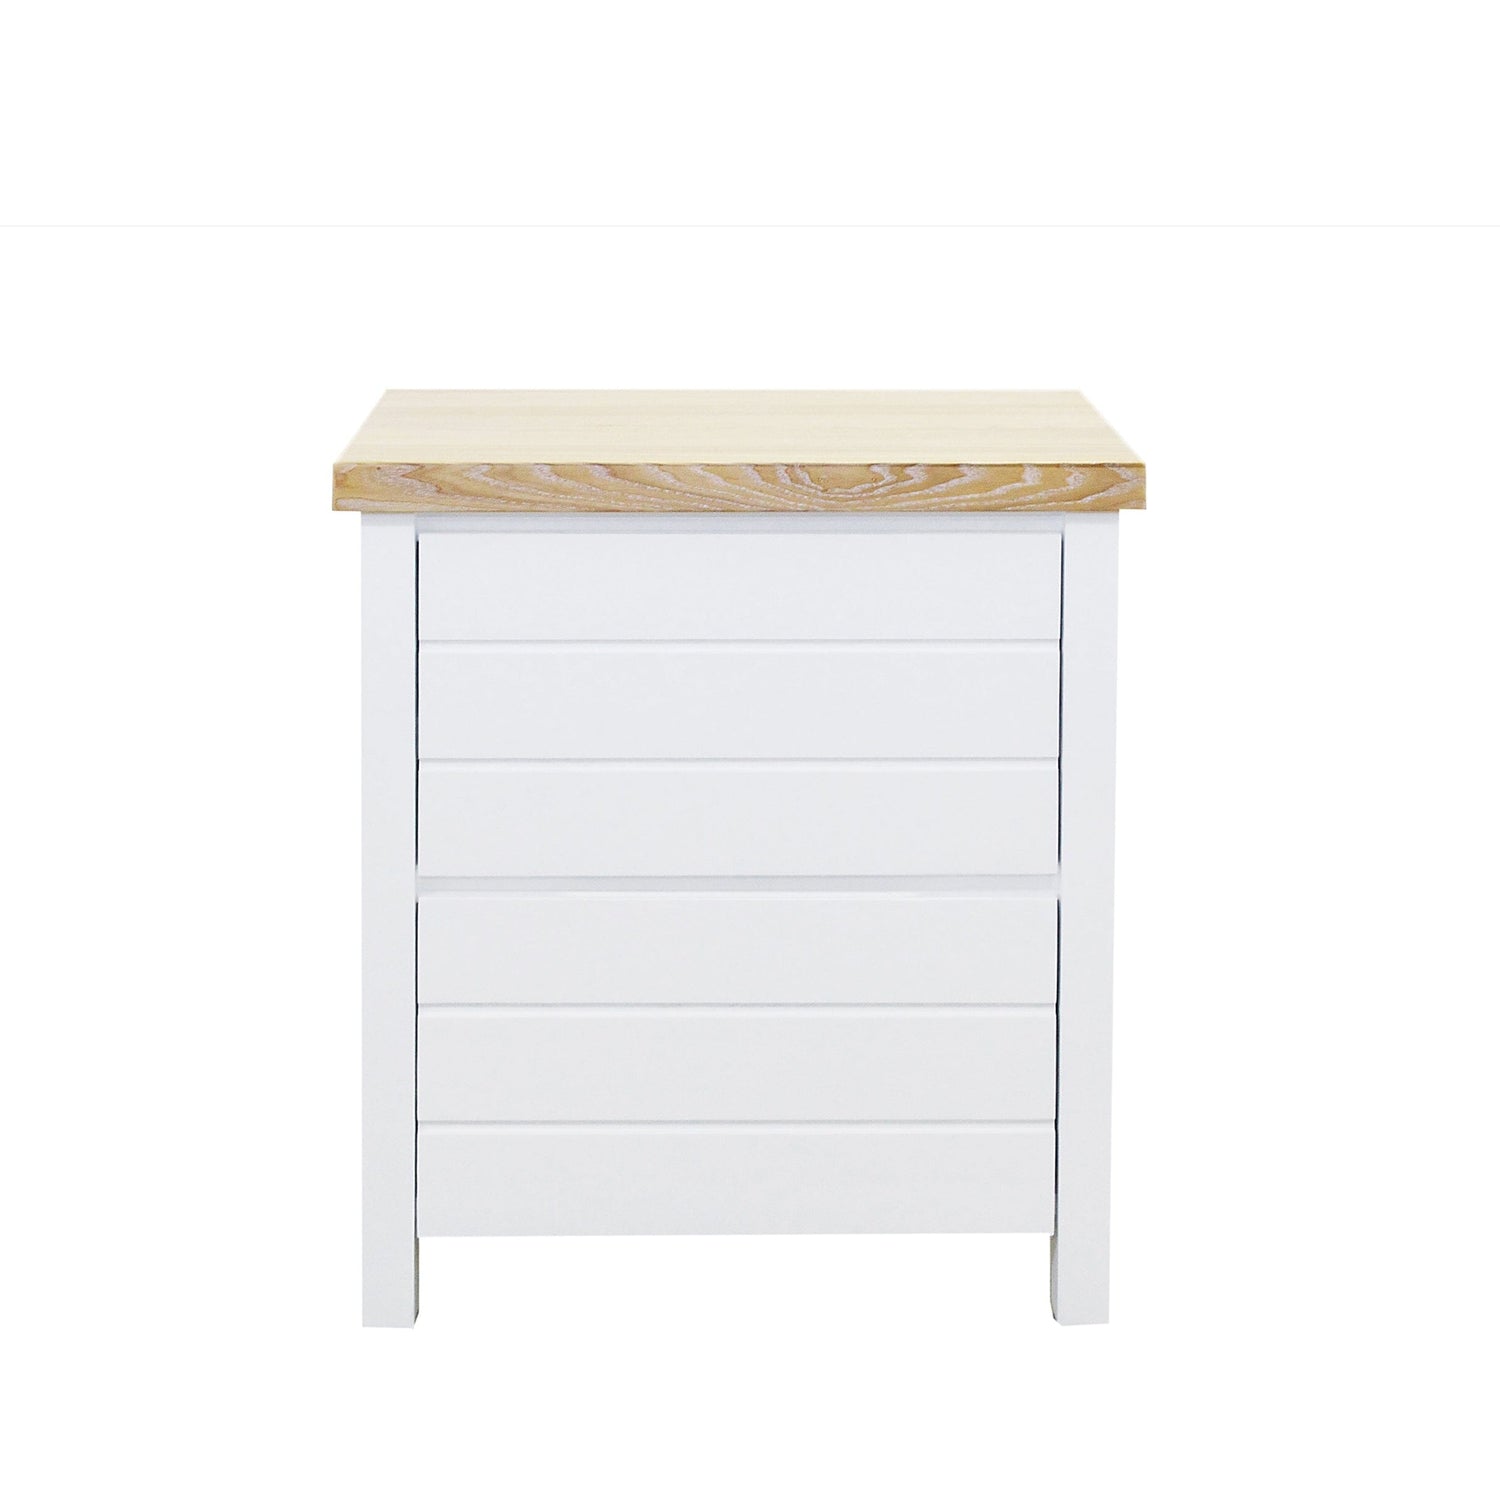 Coast Bedside L600mm - 2 Drawer Bedroom Furniture Beachwood Designs White &amp; Limed Ash 